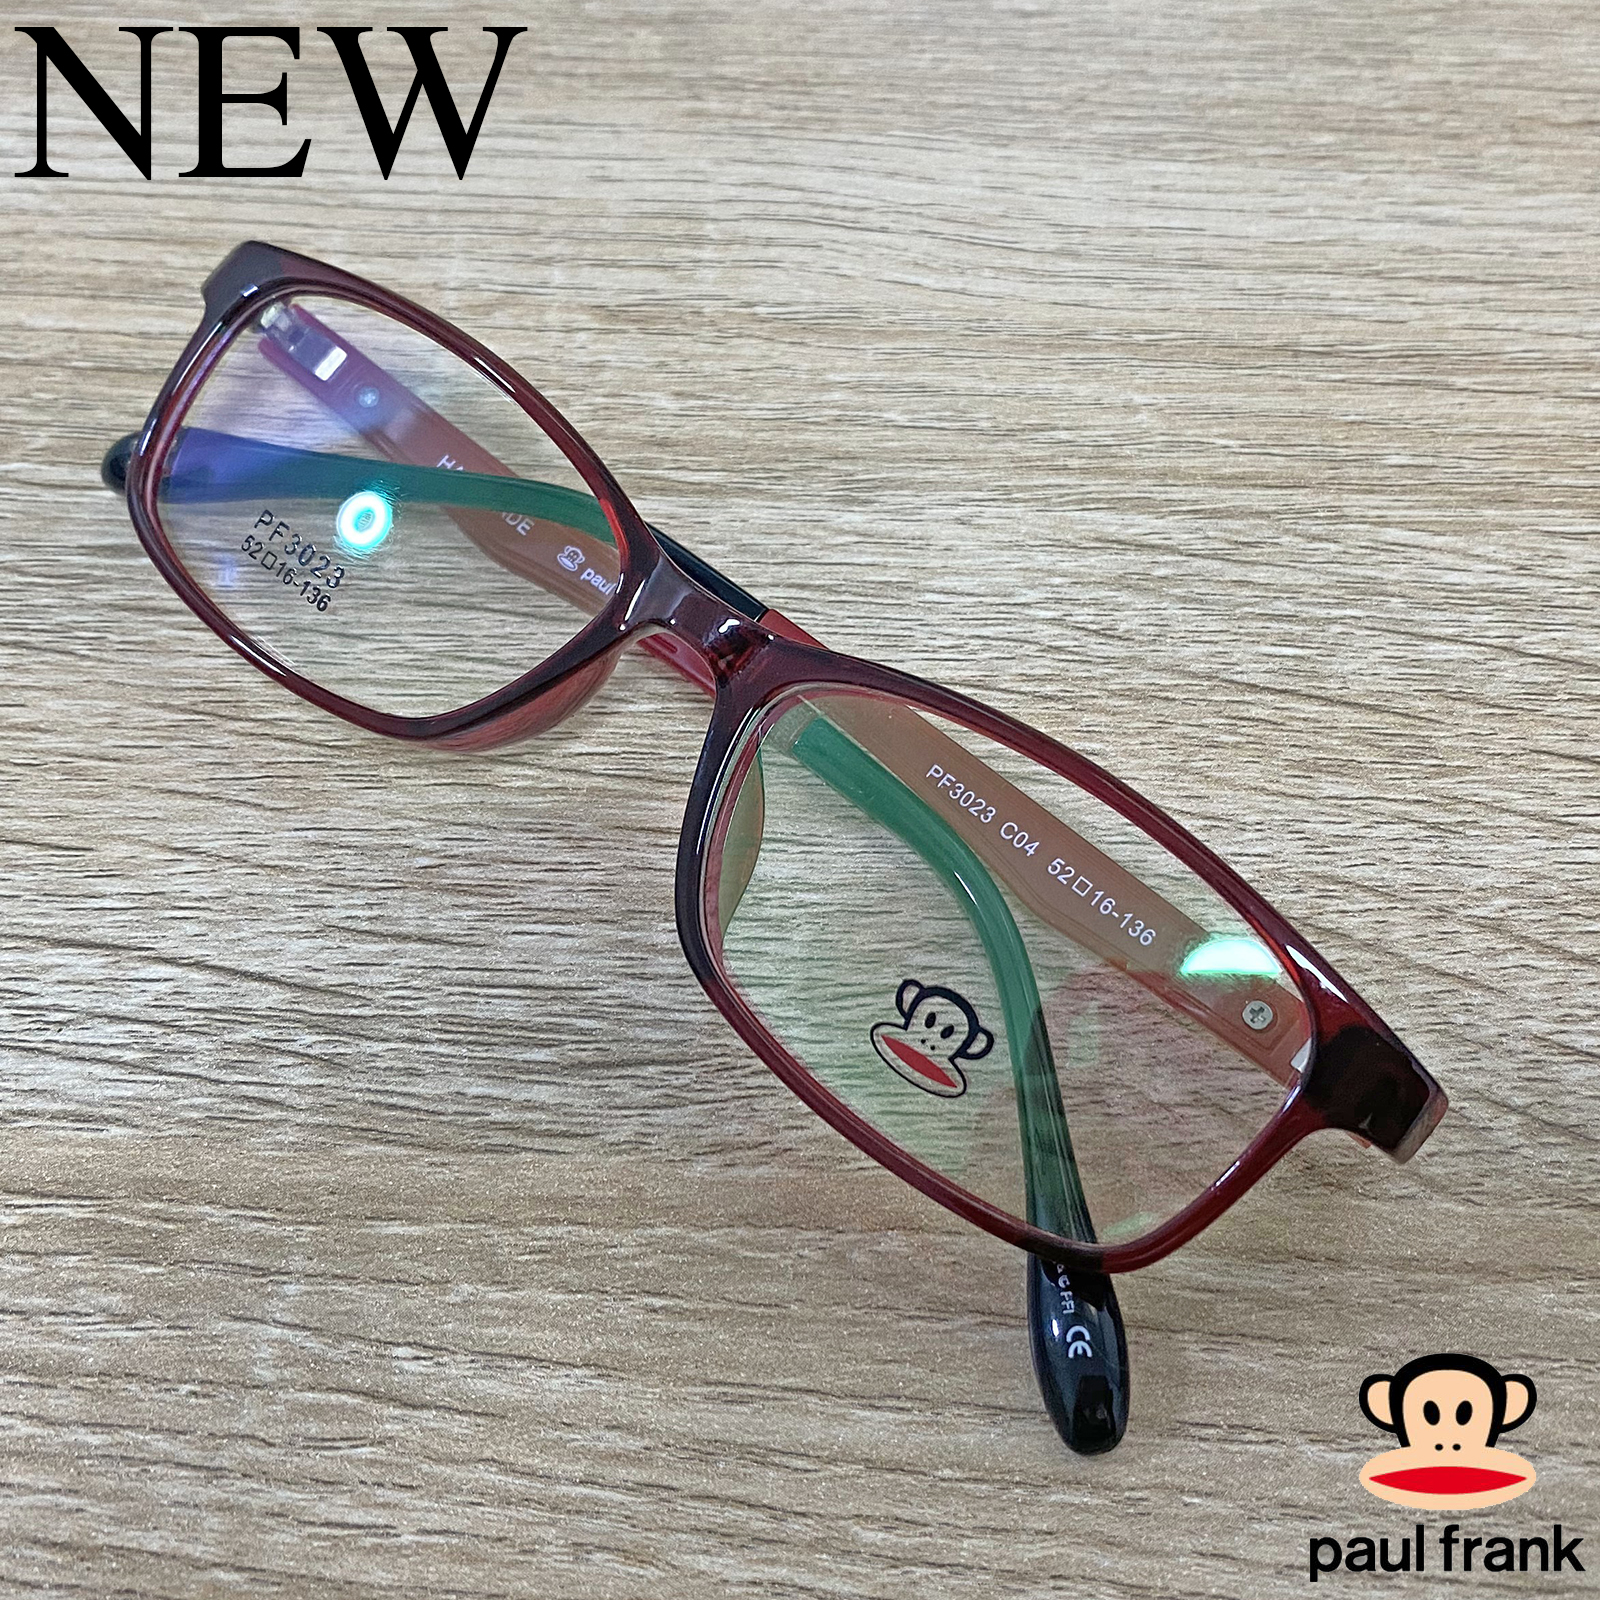 Fashion กรอบแว่นตา สำหรับตัดเลนส์ แว่นตาชาย หญิง แว่นตา รุ่น Paul Frank 3023 สีแดง กรอบเต็ม ทรงเหลี่ยม ขาข้อต่อ วัสดุ TR 90 รับตัดเลนส์ทุกชนิด